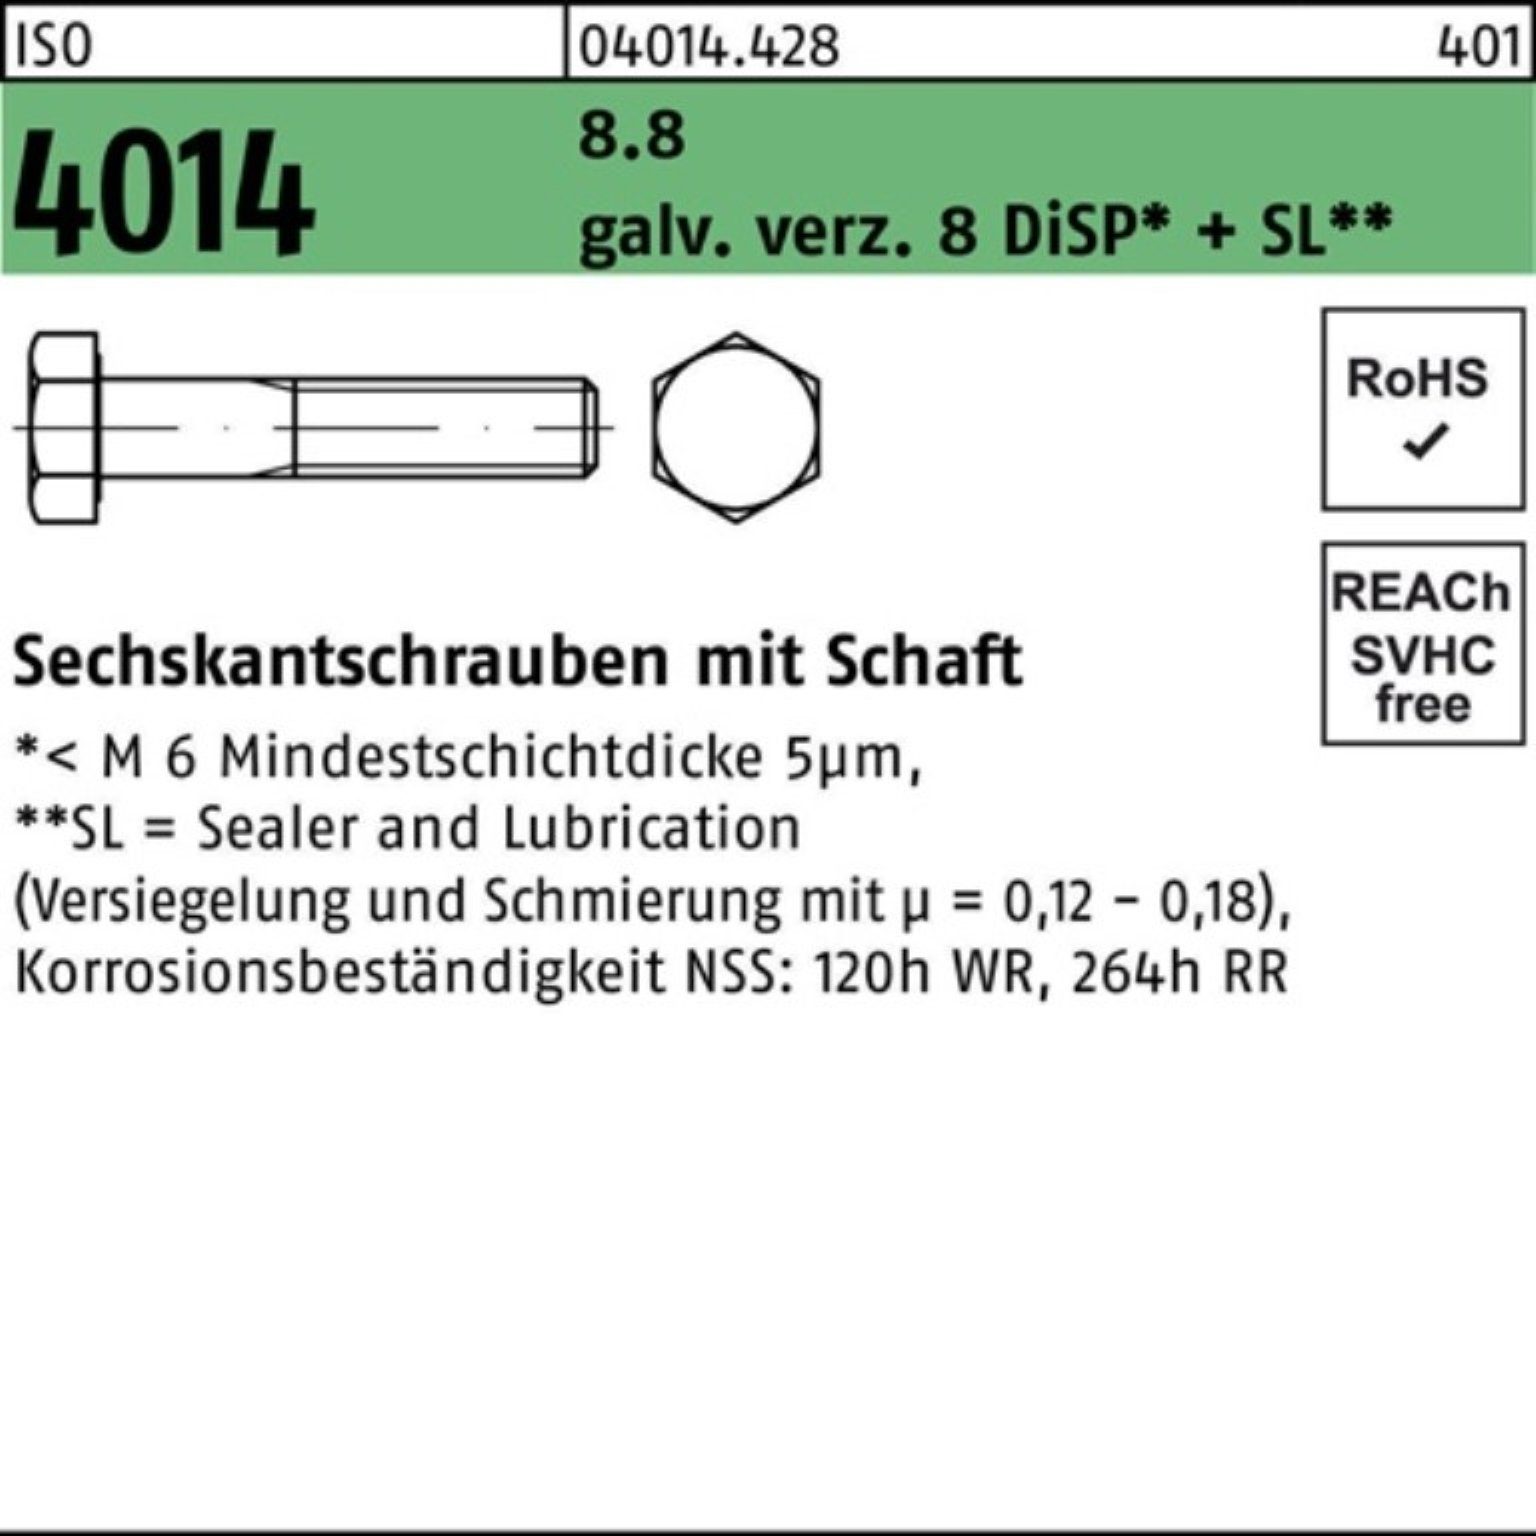 Bufab Sechskantschraube 100er Pack Sechskantschraube ISO 4014 Schaft M16x100 8.8 galv.verz. 8